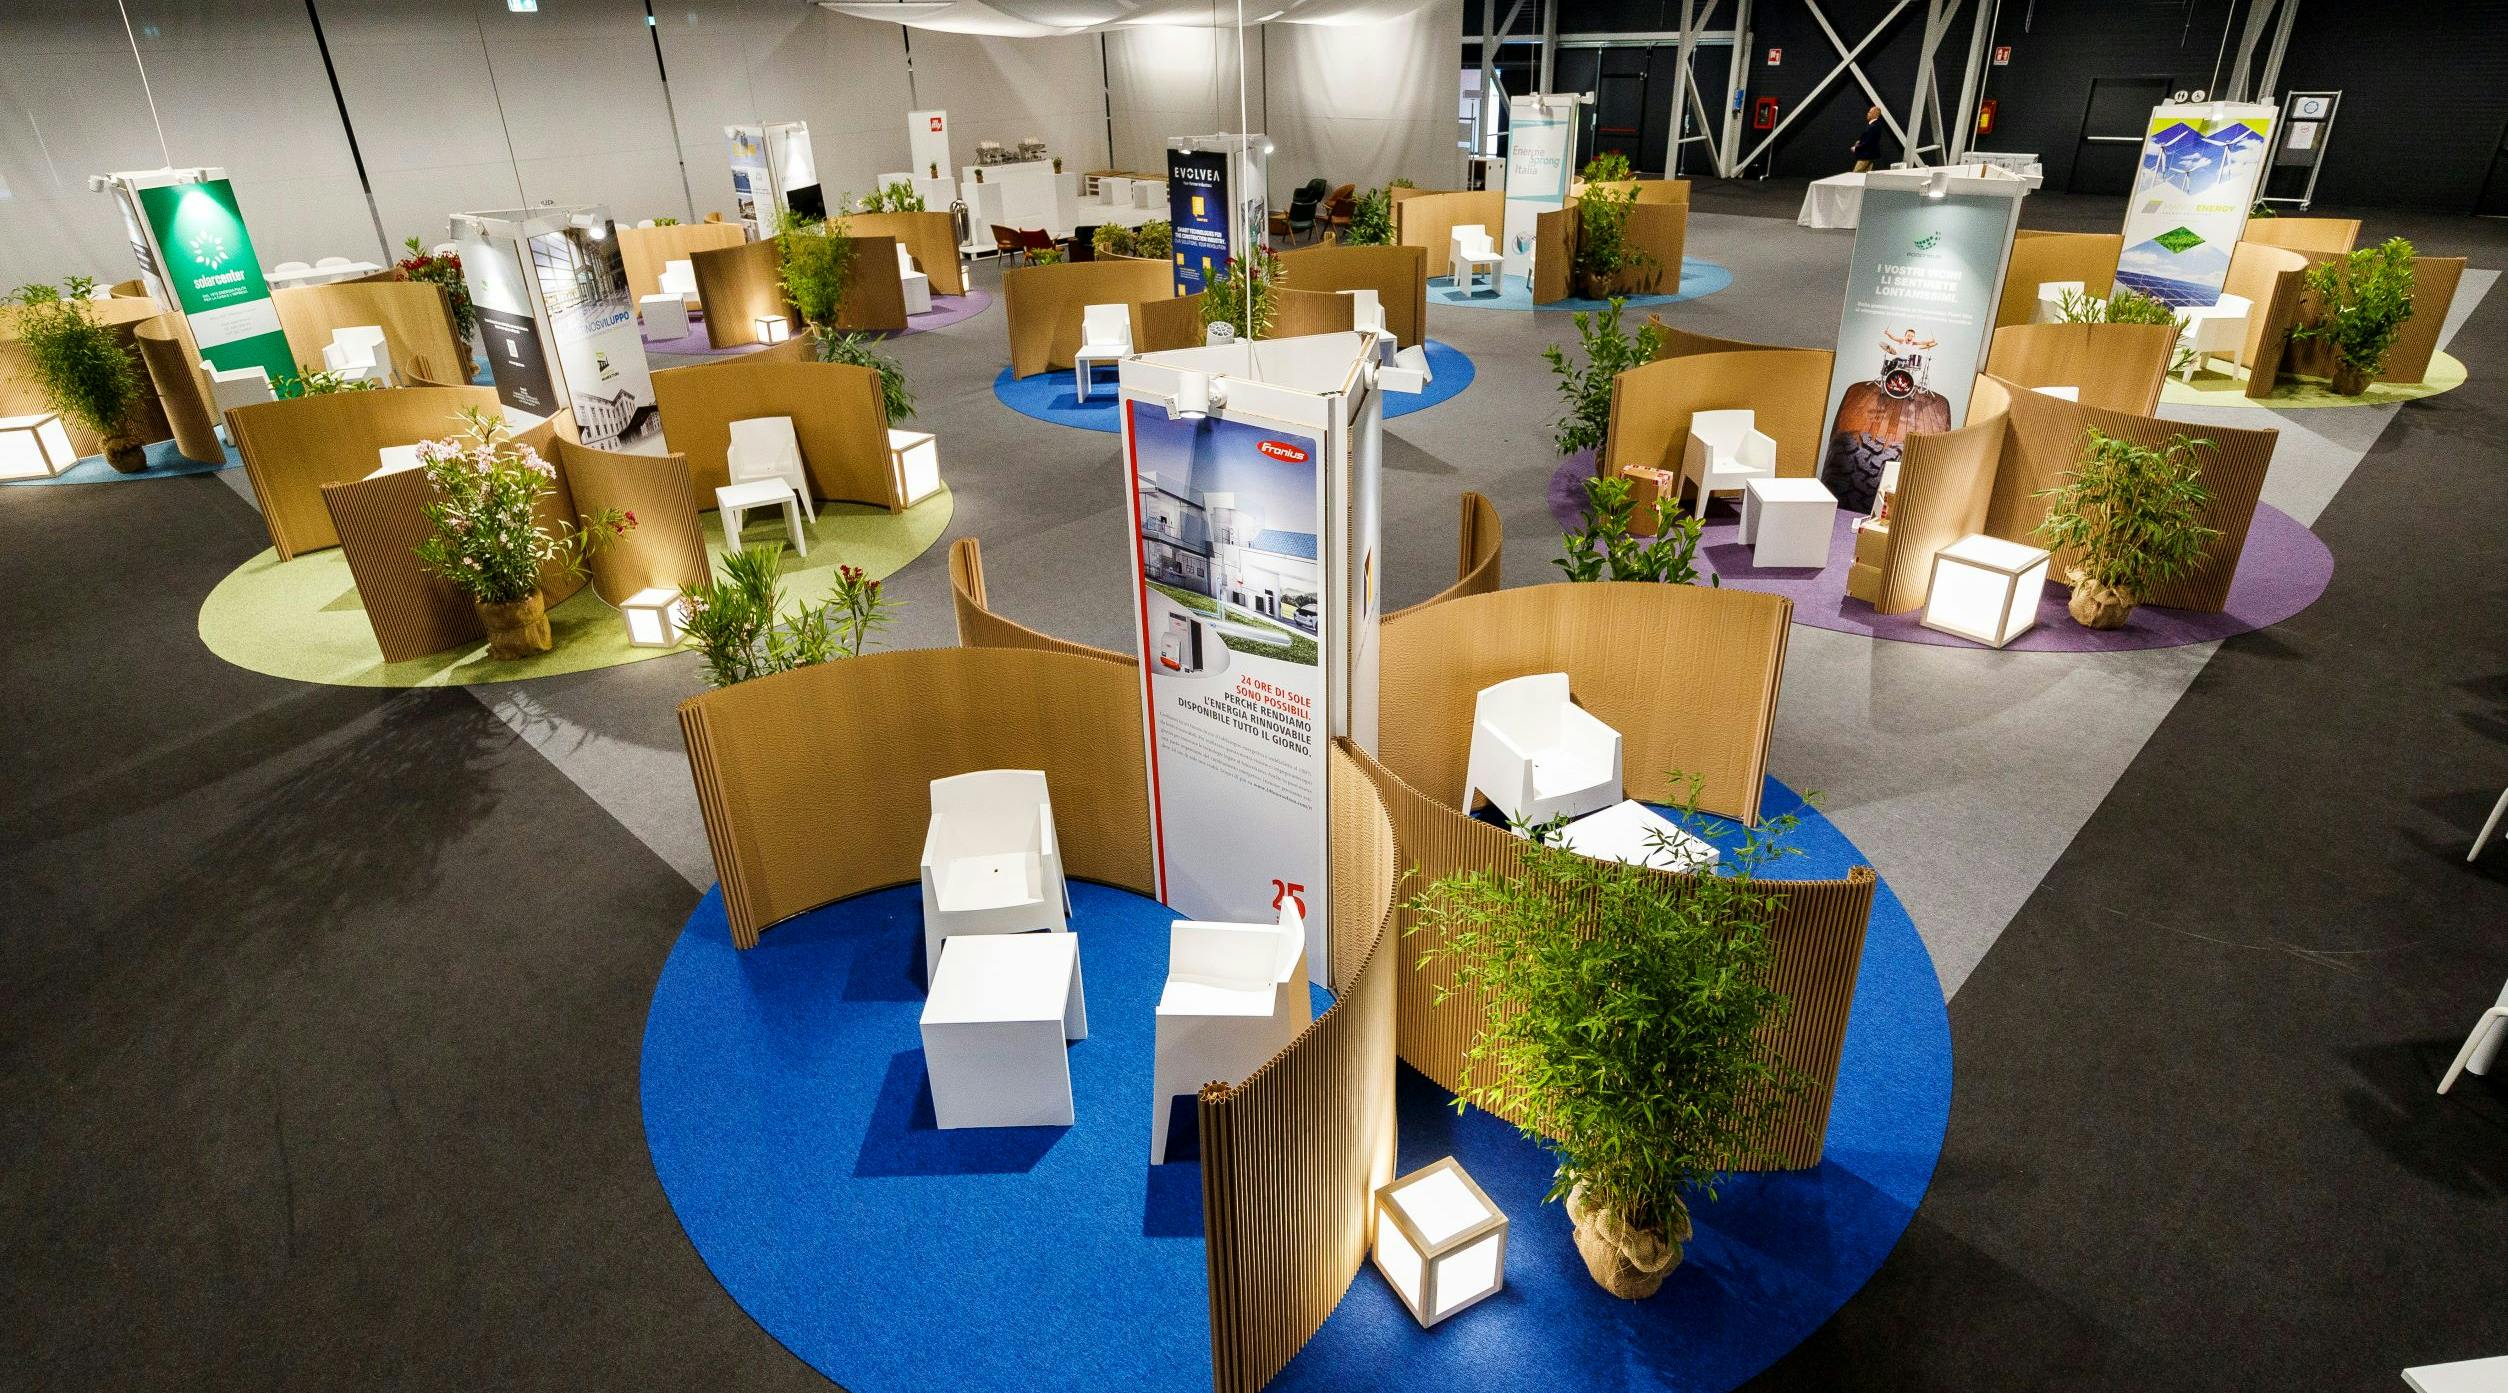 Sala exhibition con piante e stand